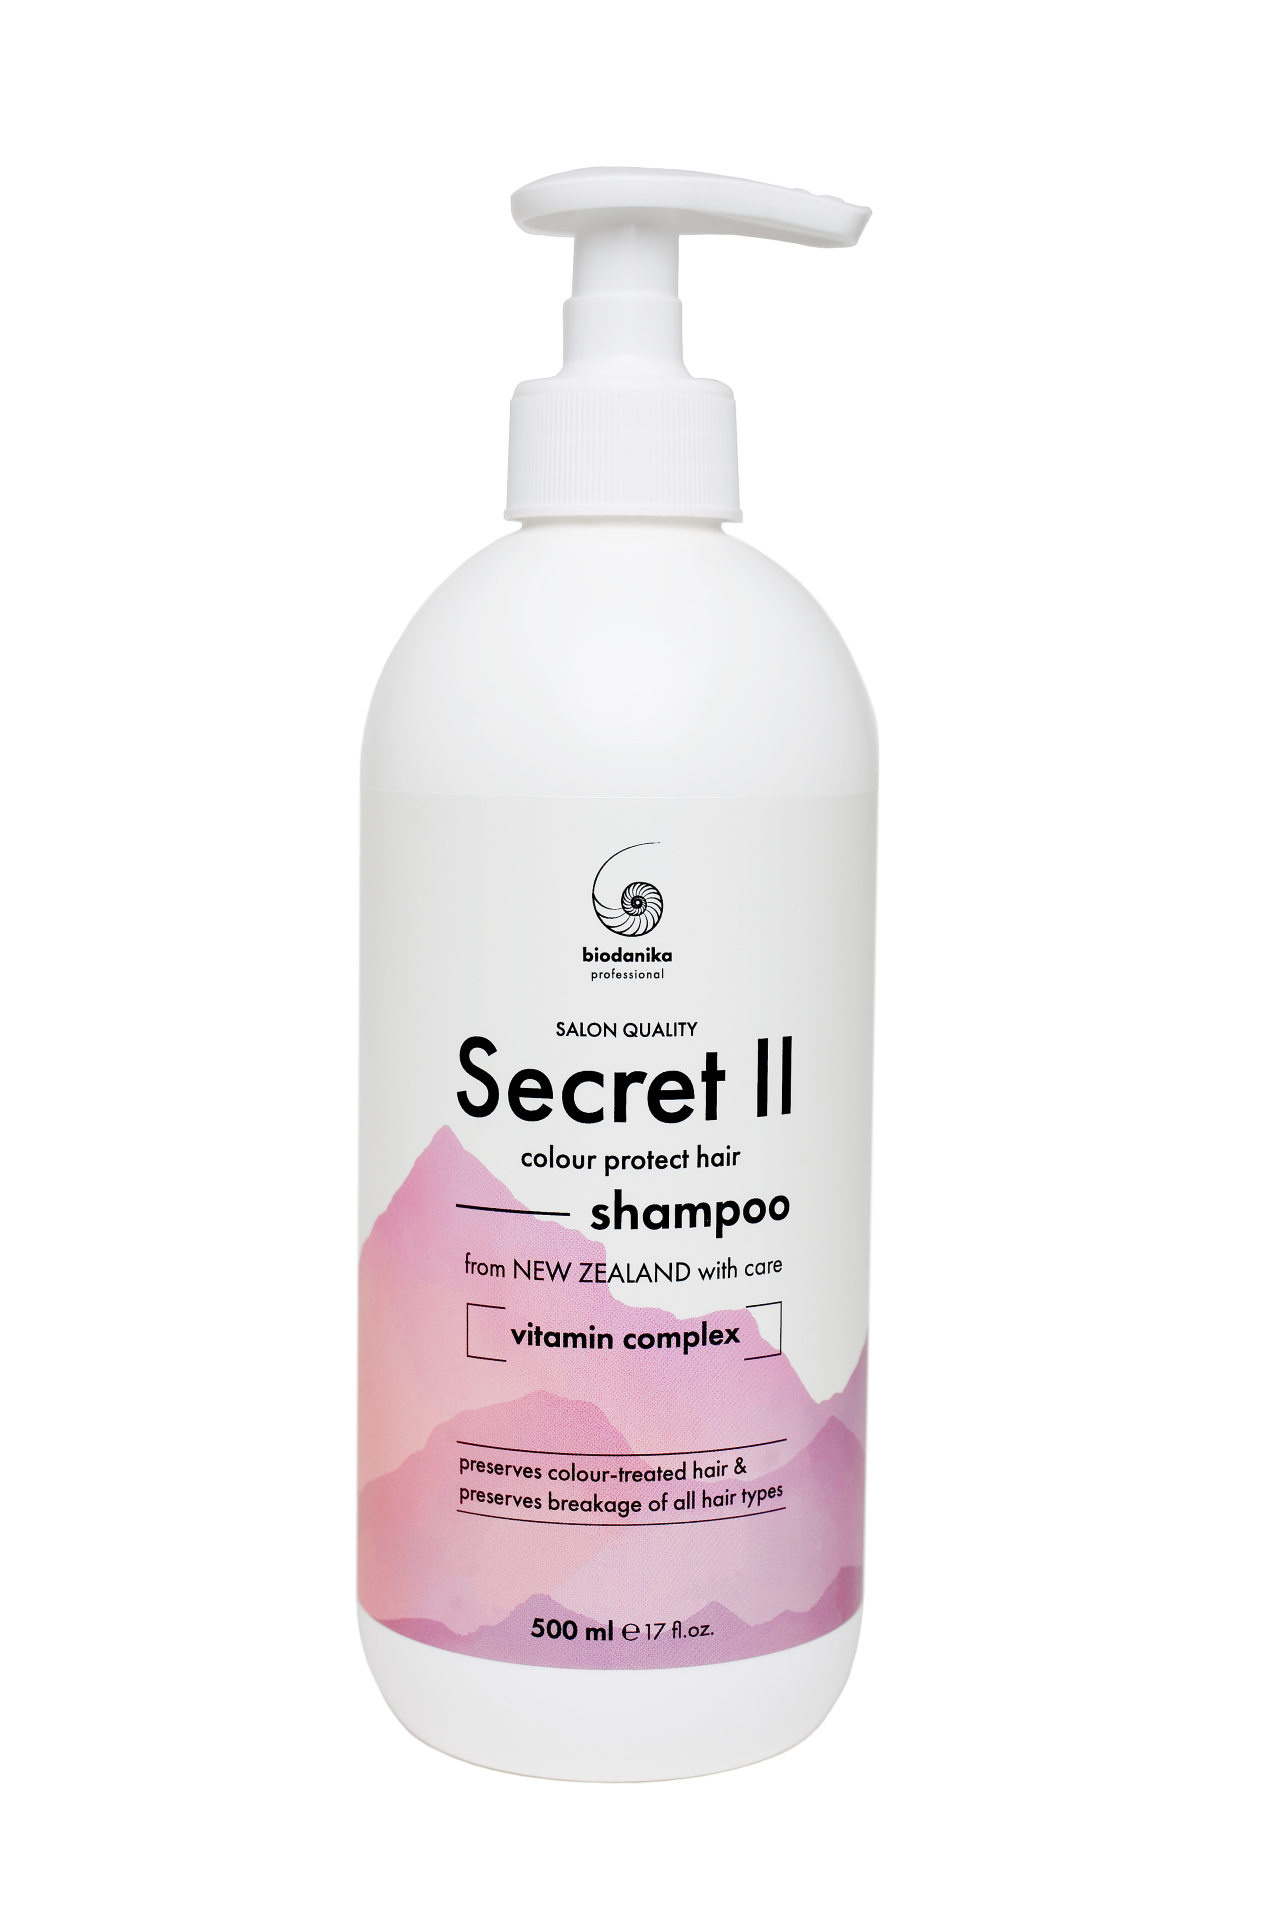 Шампунь профессиональный для окрашенных, химически обработанных, наращенных волос ниацином, пантенолом, с гиалуроновой кислотой, BIODANIKA Professional Secret II Colour Protect Hair Shampoo, Vitamin Complex, 500 мл